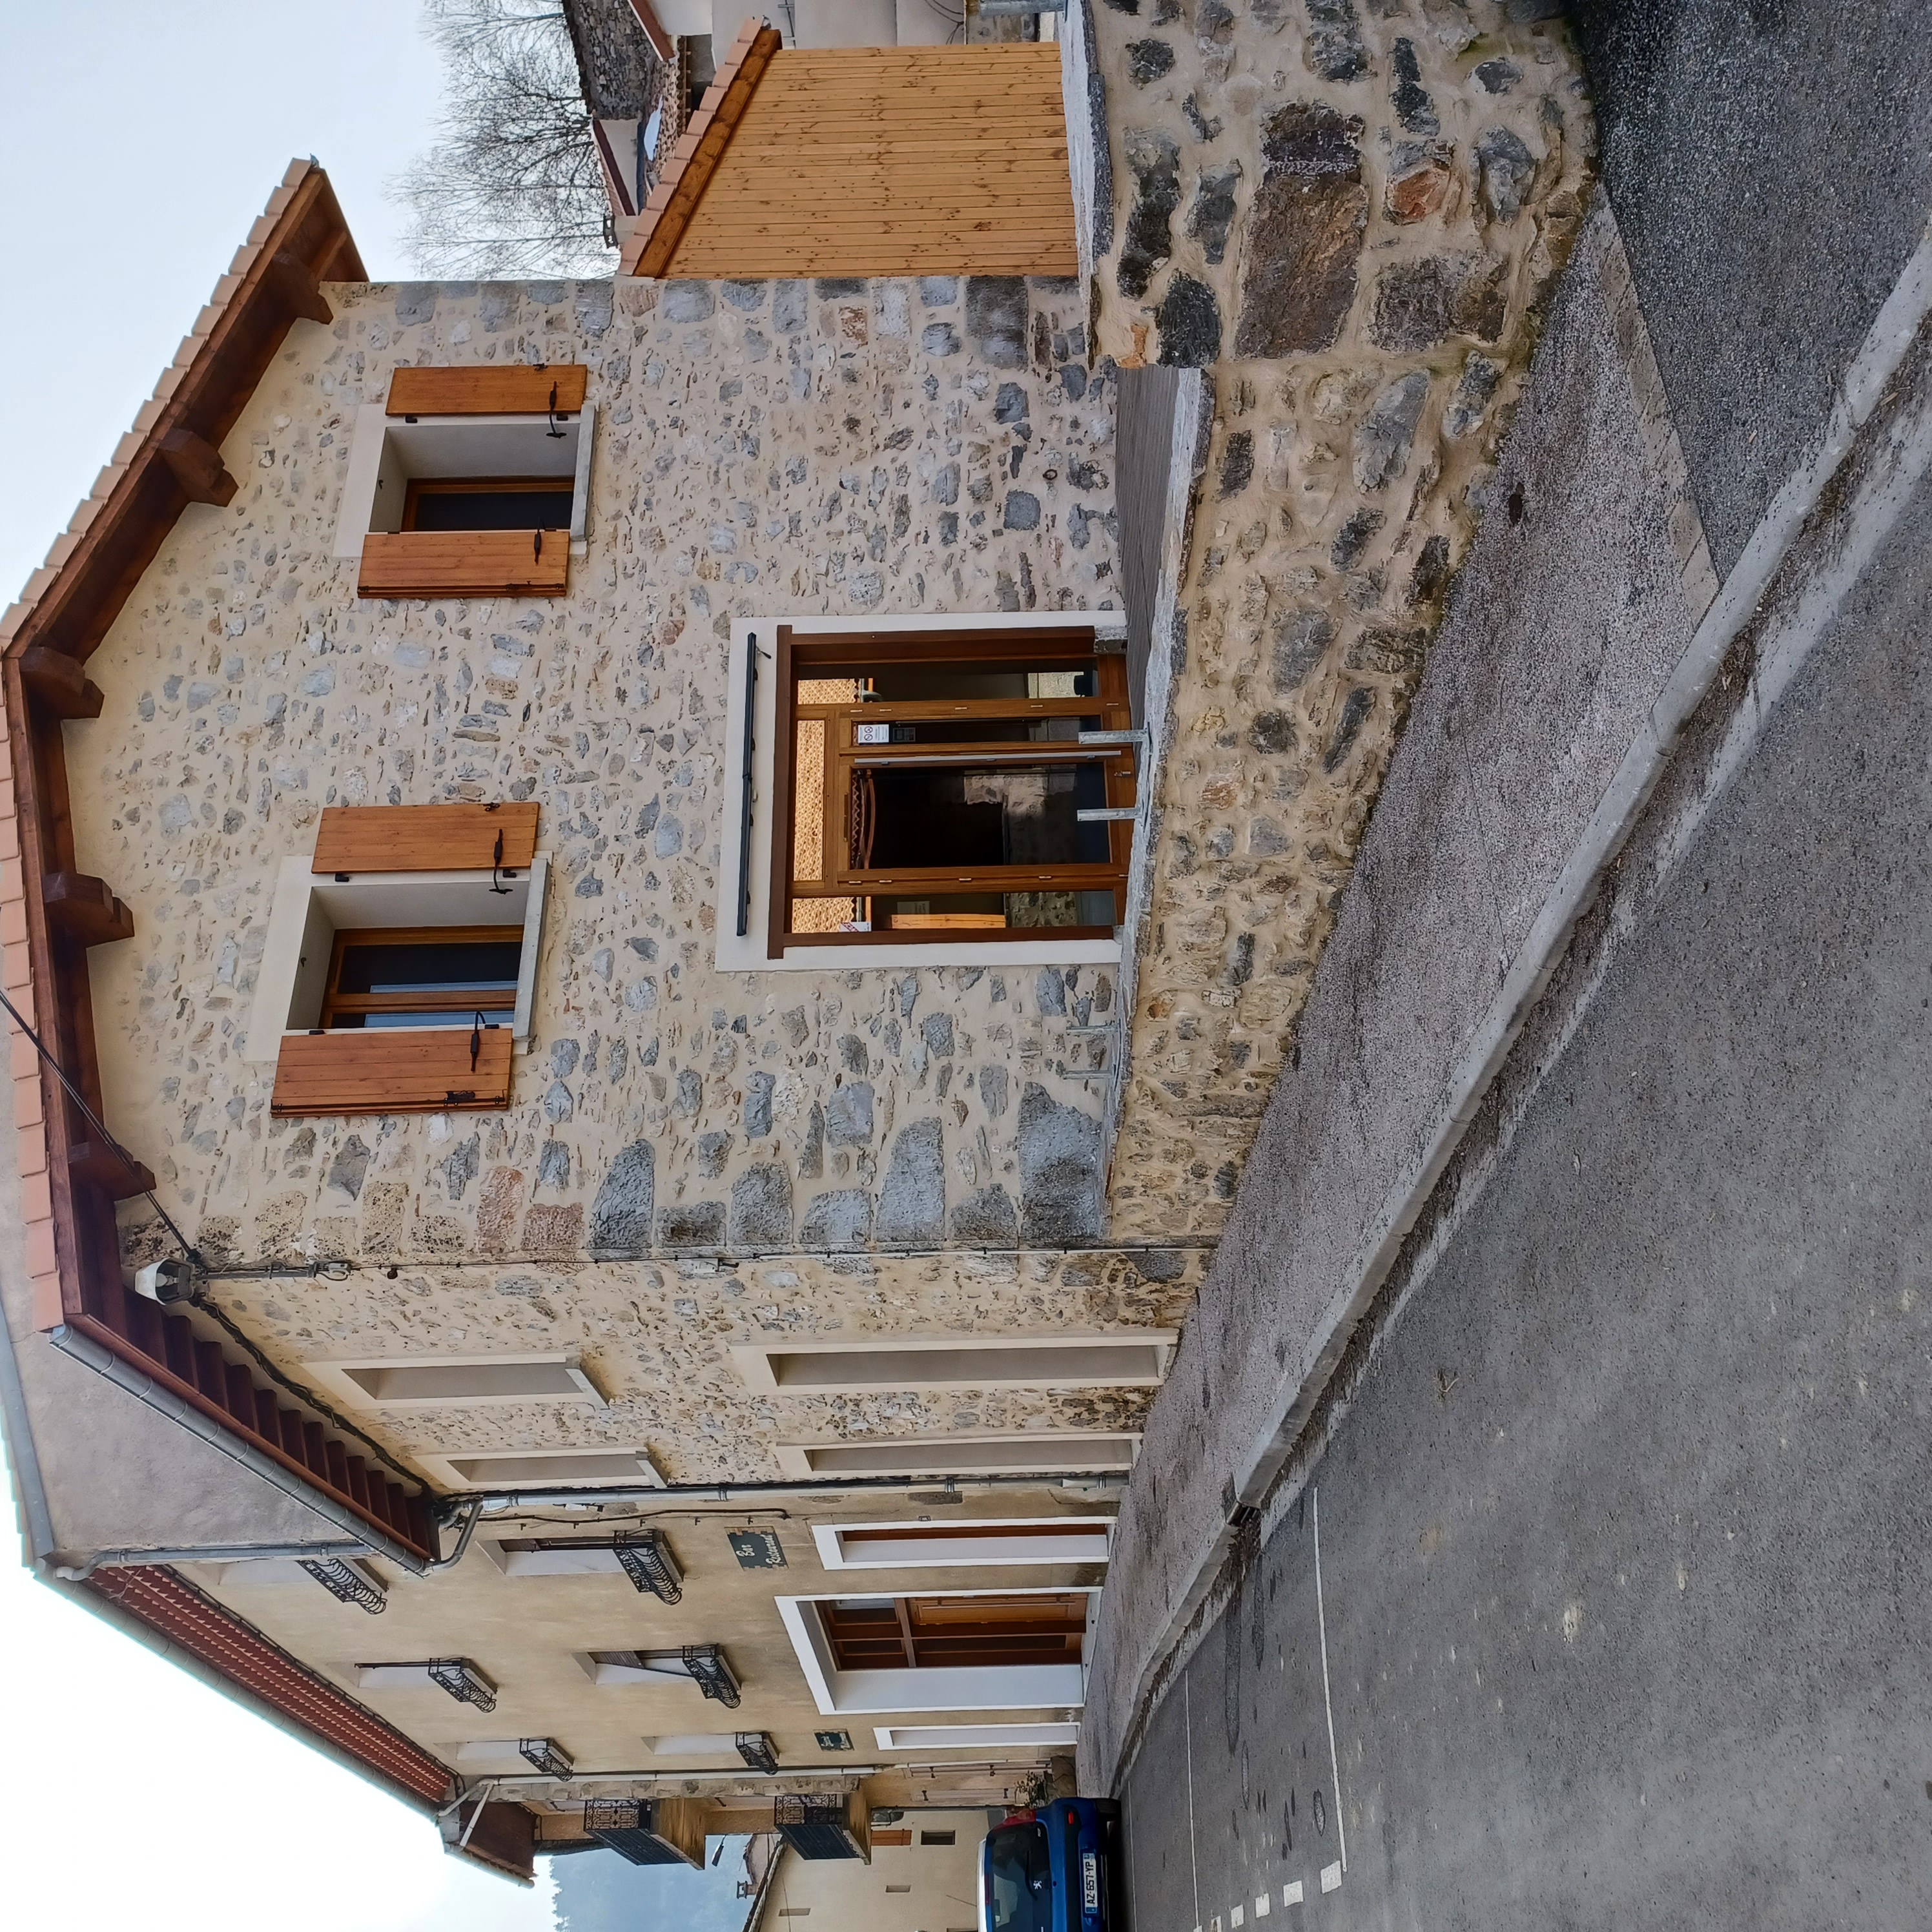 A LOUER : Café-Restaurant-Dépôt de pain-Services à louer à ROQUEFEUIL (300 habitants) dans l’Aude au cœur du Pays Cathare. Situé dans le piémont Pyrénéen à 30 km d’Ax les Thermes, 27 km de Quillan, 20 km de Lavelanet, 70 km de Carcassonne et 48 km de Foix.
Roquefeuil (altitude moyenne 1000 m) est un environnement agricole et d’élevage sur un plateau très touristique (randonnées, parapente, cyclisme sur route, cyclotourisme, château cathare, ski, etc.).
Établissement entièrement équipé et neuf appartenant à la municipalité. Possibilité d’exploiter également des gites au R+1 et R+2 dans le même bâtiment. Licence IV (unique de la commune).
La Commune recherche un preneur pour une concession afin de proposer et développer des services (dépôt de pains, journaux, relais colis, animations, etc.), le bar et une restauration à une clientèle locale, professionnelle, et touristique (camping 3 étoiles dans la commune). 
Surface totale : 
Salle de bar et restaurant  : 120 m²
Cuisine équipée et sa réserve : 40 m²
Terrasse bois extérieure : 42m²
Possibilité de logement au dessus de l’établissement.
Le dossier doit être adressé par courrier à la Commune : 75 Grand Rue 11340 Roquefeuil